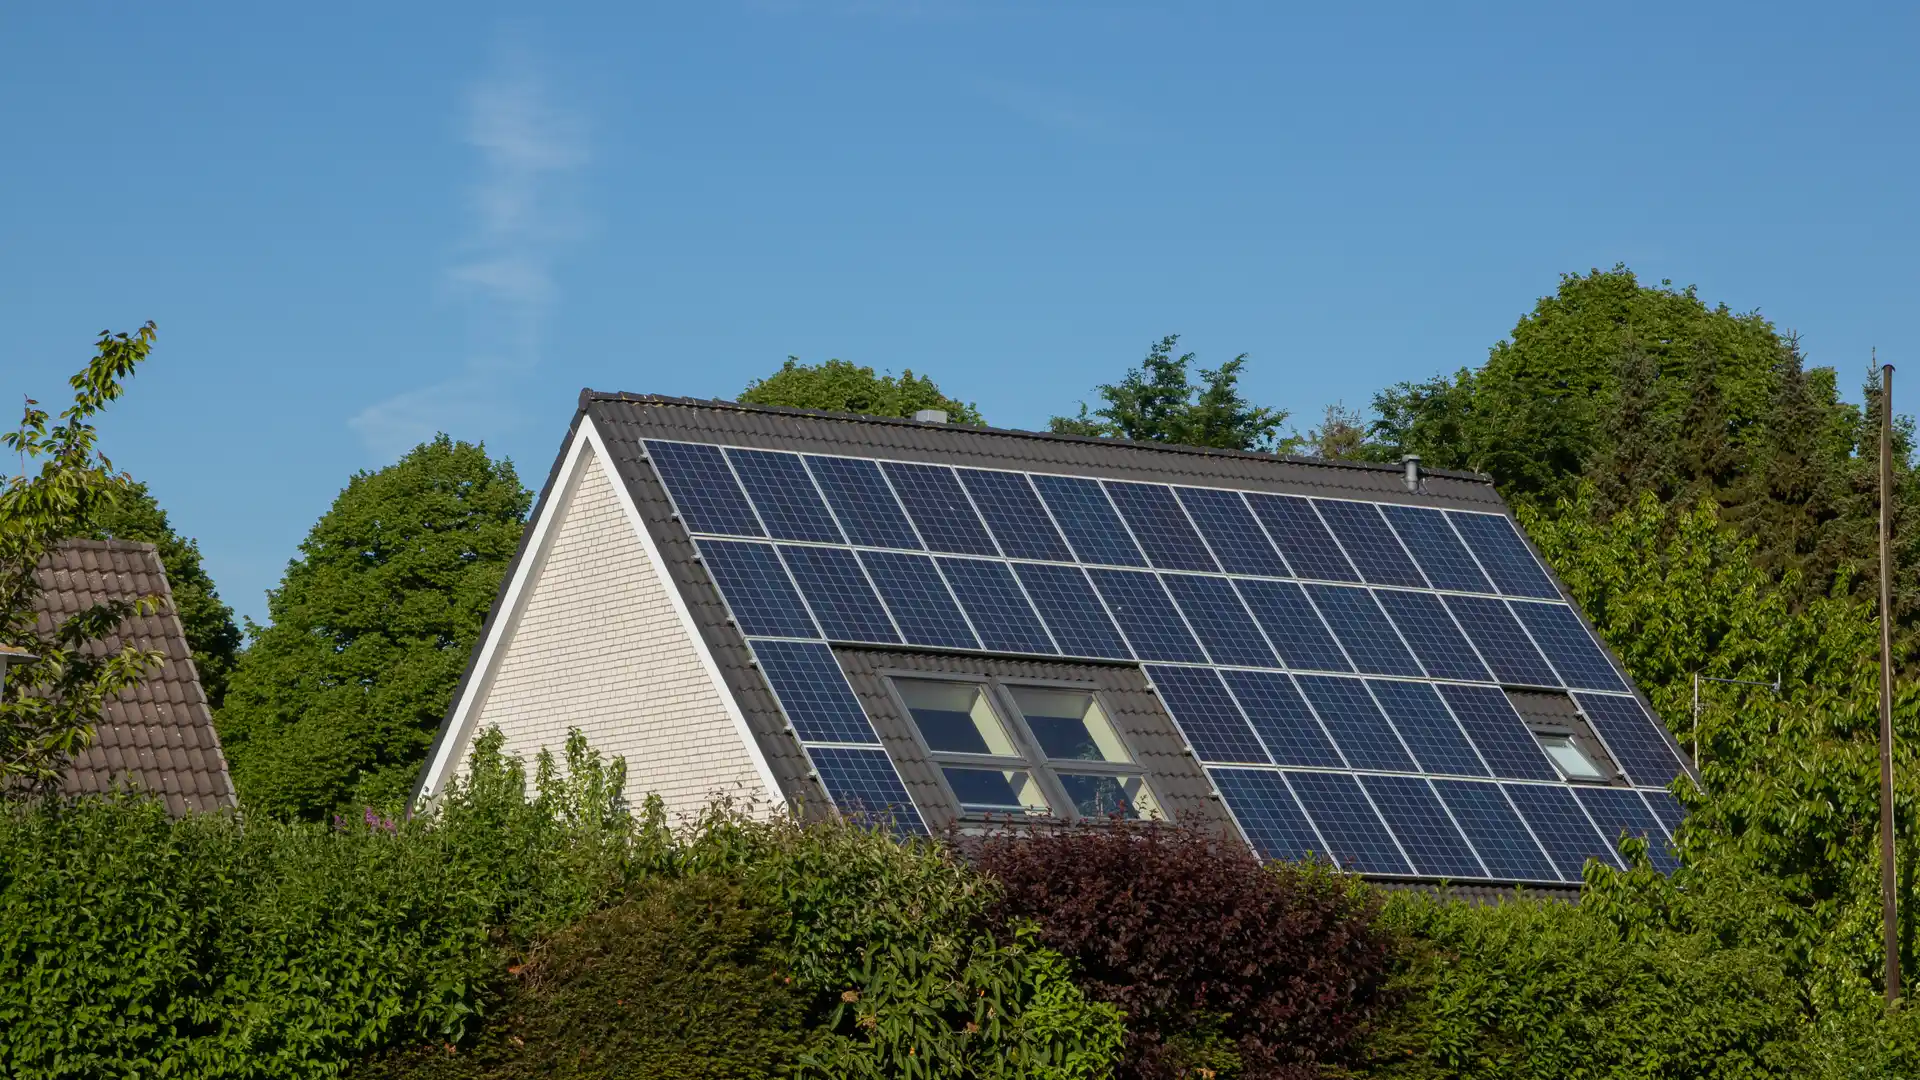 Casa con placas solares en el tejado para representar la energia solar de Energygo